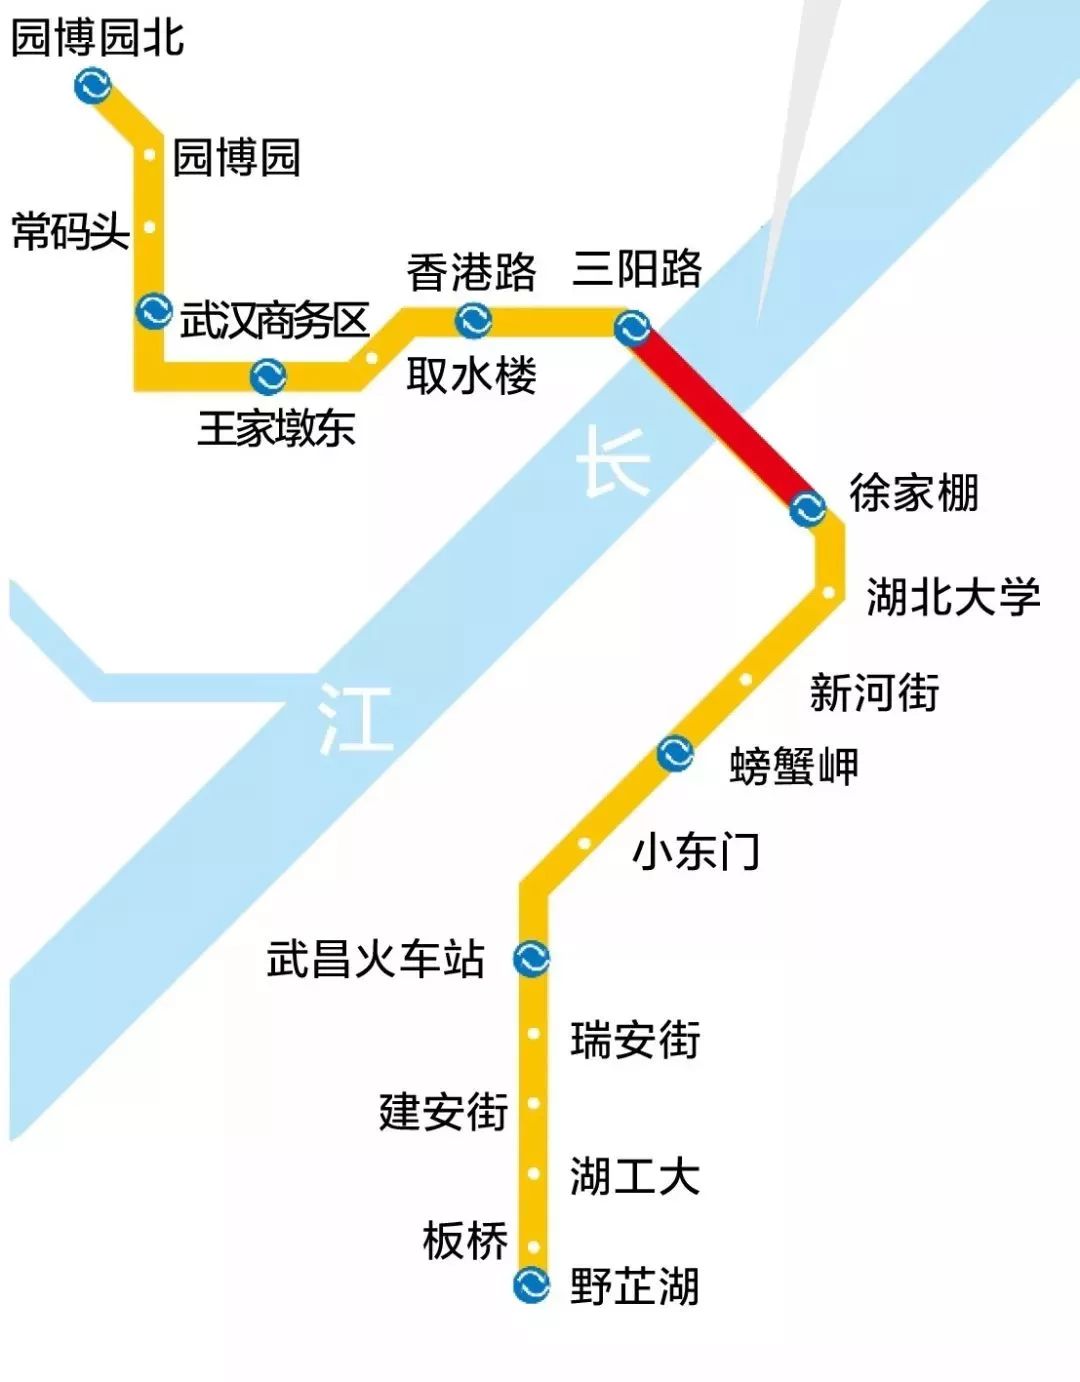 今天,武汉地铁7号线正式试运行!vip视角穿越长江隧道